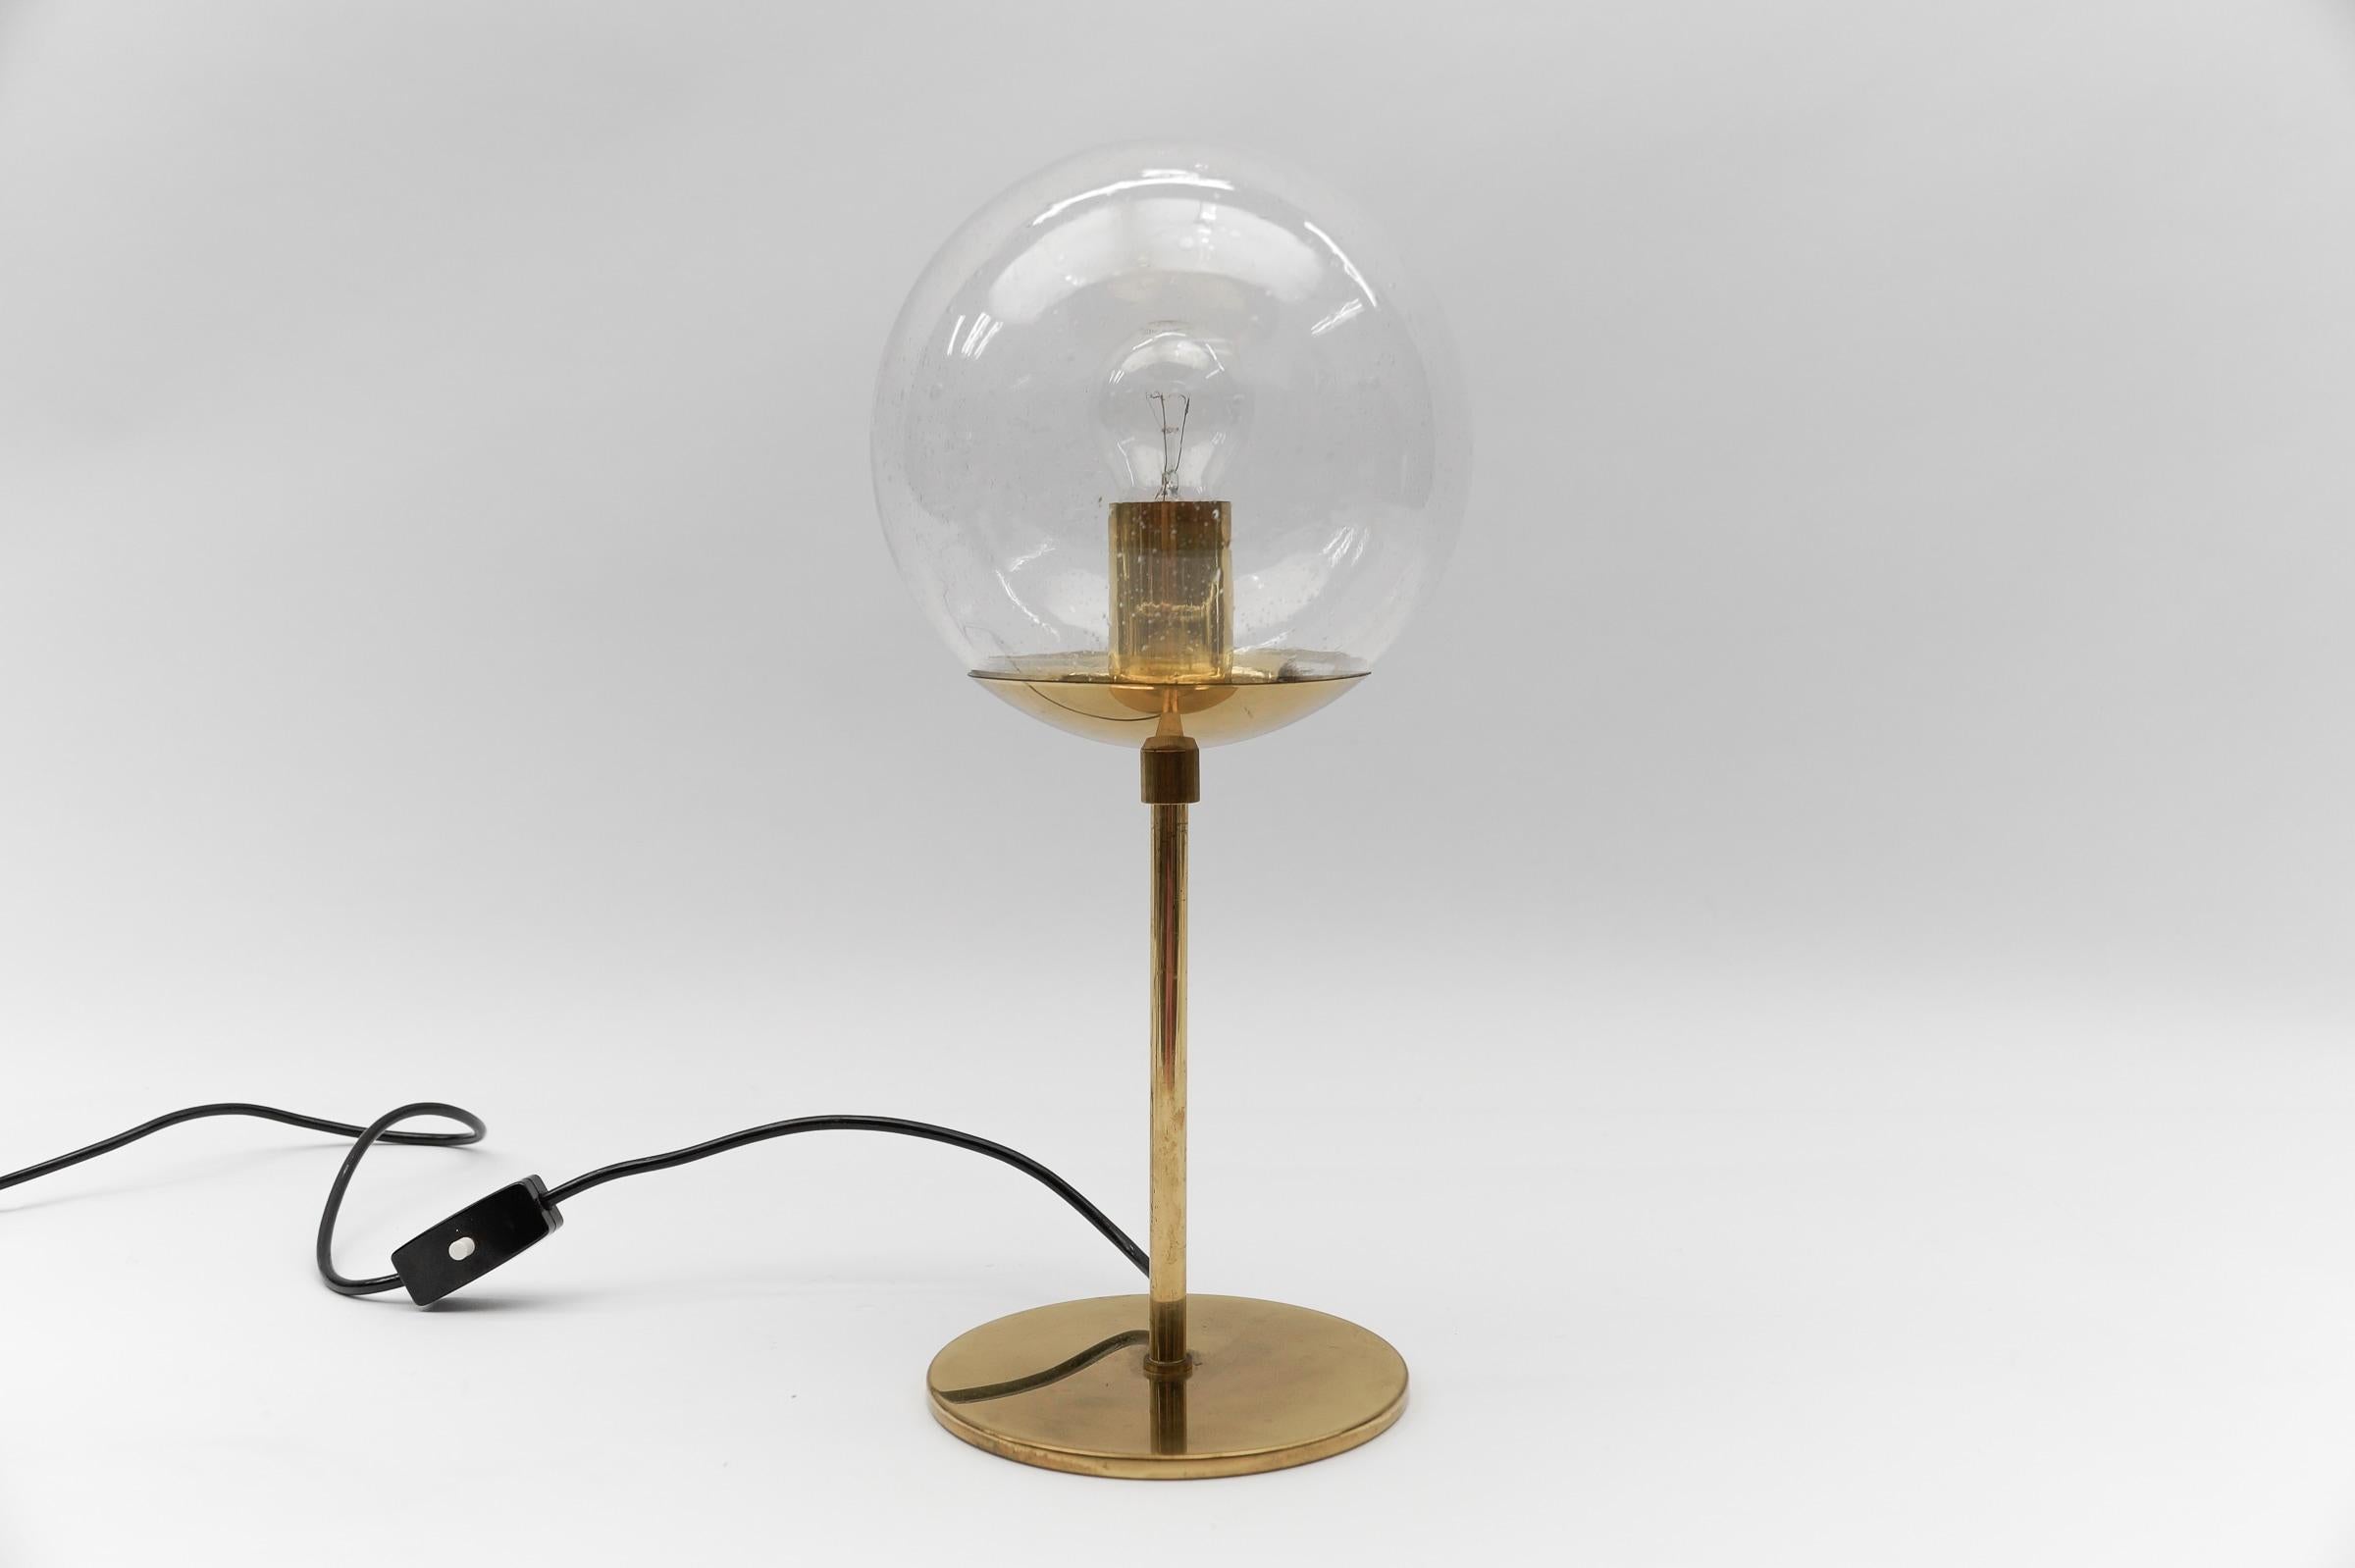 Lampe de table moderne du milieu du siècle en laiton et verre, années 1960

Dimension
Hauteur : 43 cm (16,92 in)
Diamètre : 7,87 in (20 cm)

La lampe nécessite 1 ampoule à vis E27 / E26 Edison, elle est câblée et en état de marche. Il fonctionne à